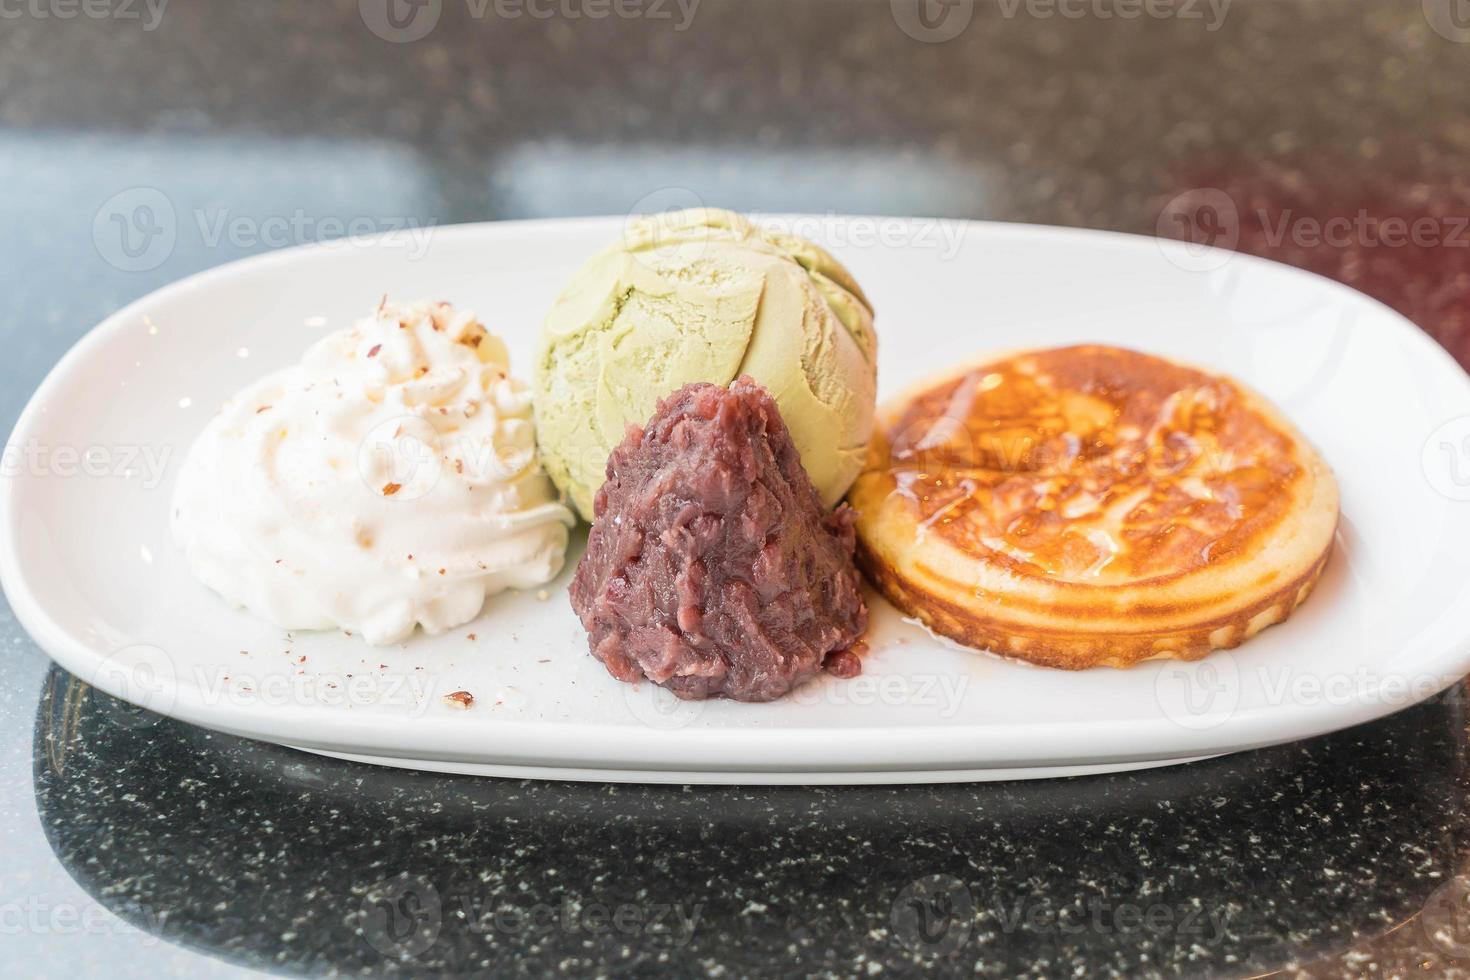 groene thee-ijs met pannenkoek, rode boon en slagroom - dessert foto